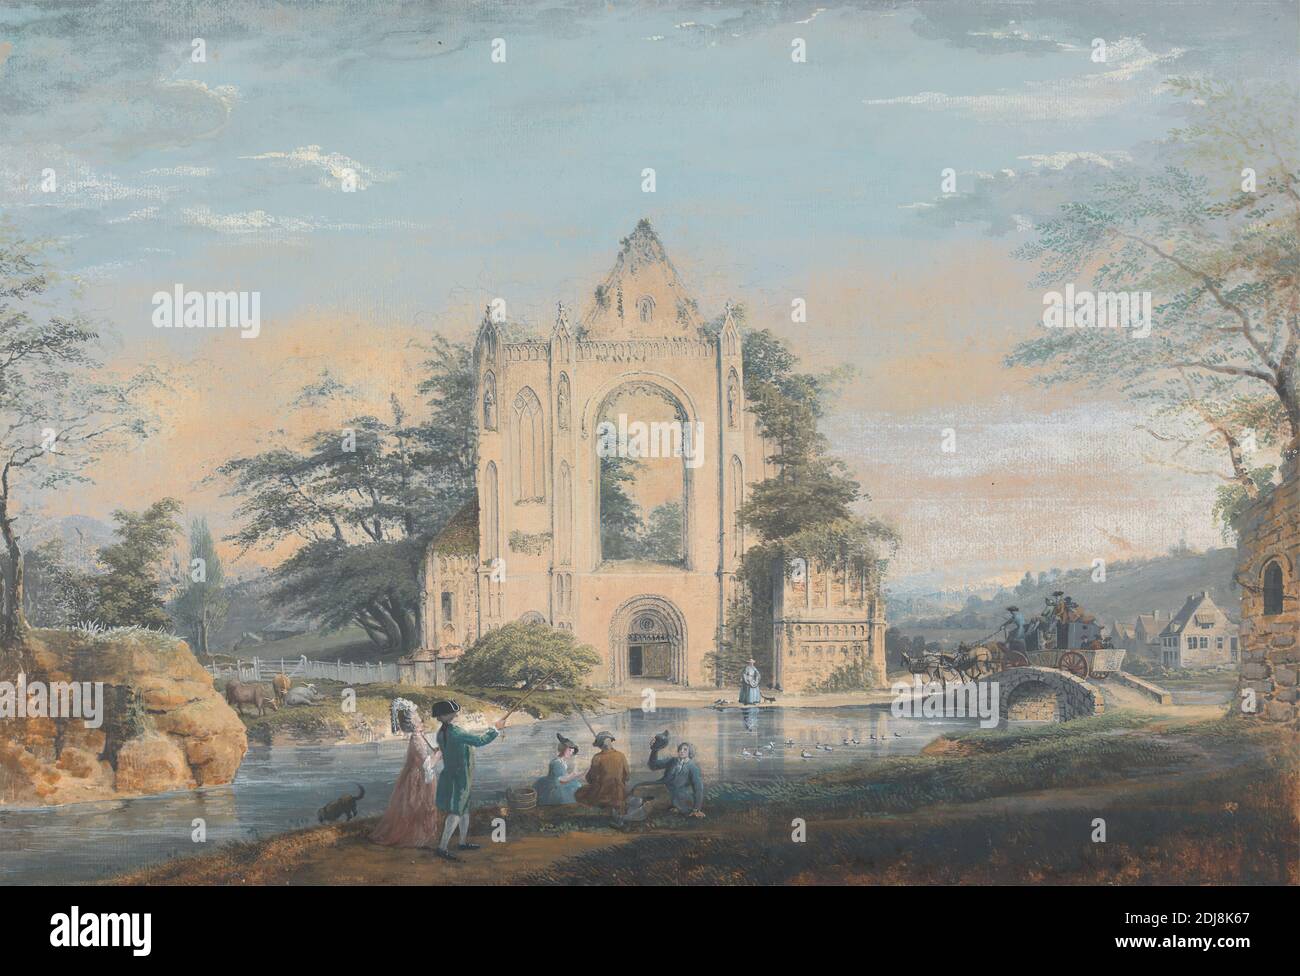 Landschaft mit einer ruinierten normannischen Kirche, zugeschrieben Samuel Hieronymus Grimm, (früher S. H. Grimm), 1733–1794, schweizerisch, undatiert, Aquarell mit Gouache über Graphit auf mittlerem, glattem, beigefarbenem Papier, Blatt: 13 1/8 x 19 1/8 cm (48.6 x 33.3 Zoll) und zeitgemäß gezeichneter Rand: 14 3/4 x 20 1/4 Zoll (37.5 x 51.4 cm), Gebäude, Kutschen, Vieh, Kirche, Hund (Tier), Enten, Zäune, Angeln, Pferde (Tiere), Landschaft, Männer, Norman, Ruinen, Bäume, Frauen Stockfoto